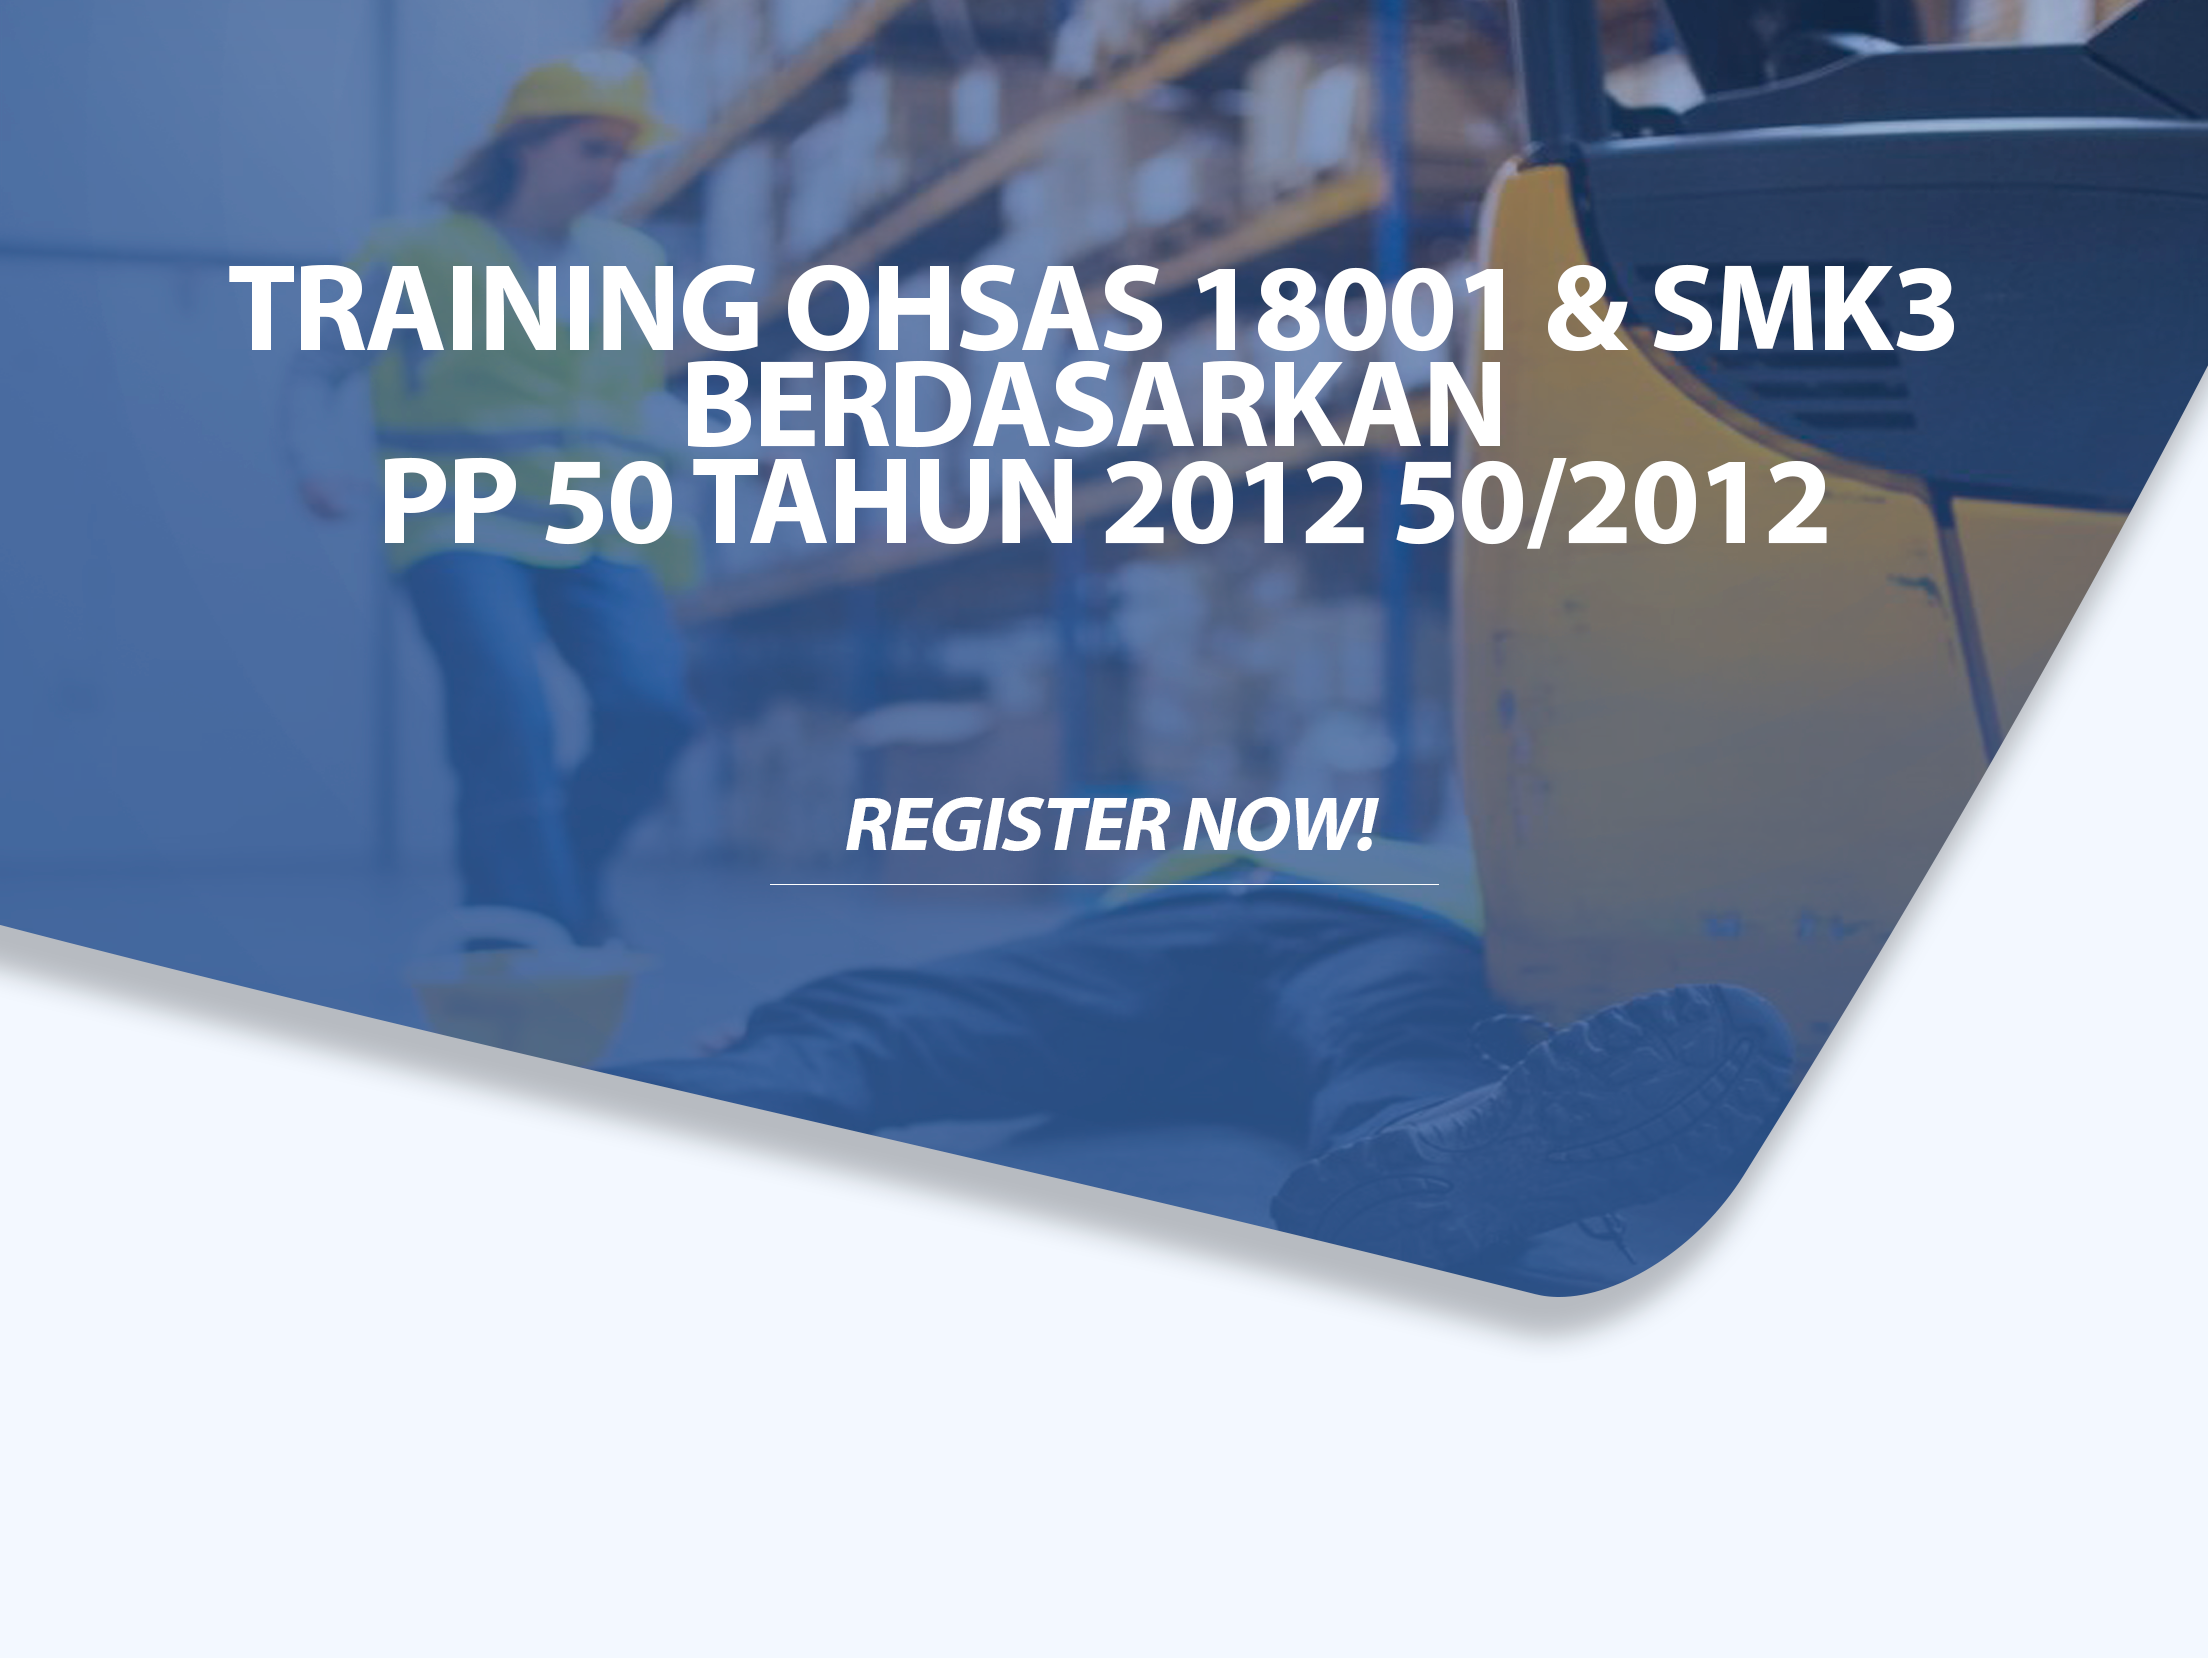 Training OHSAS 18001